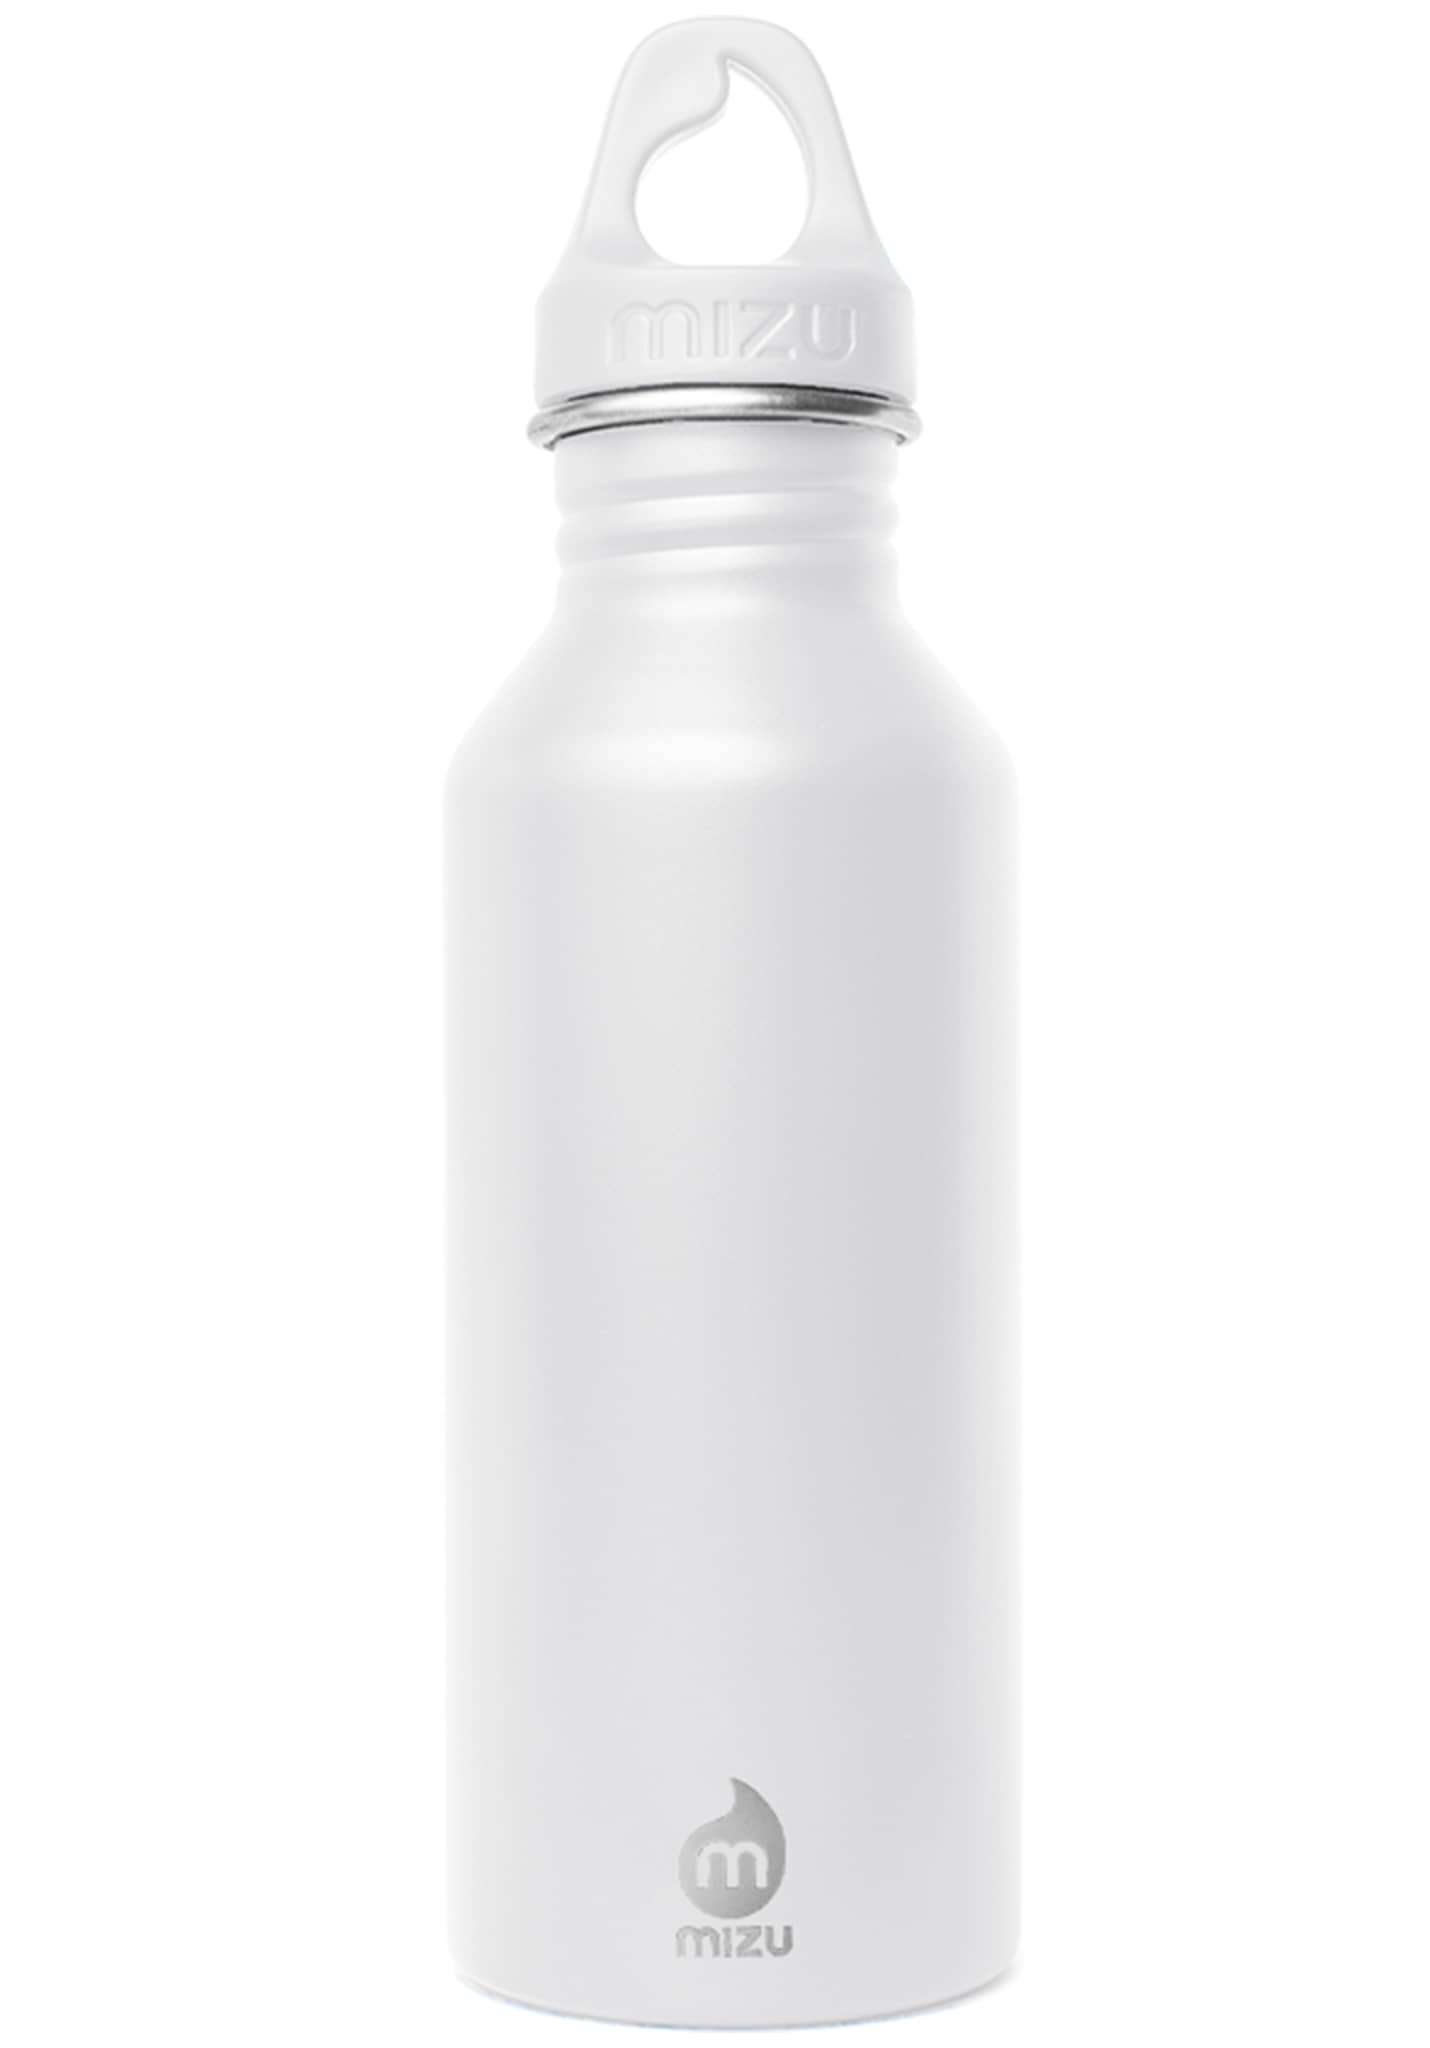 Mizu M5 - 530ml Flasche enduro weiß le w weiß lc One Size